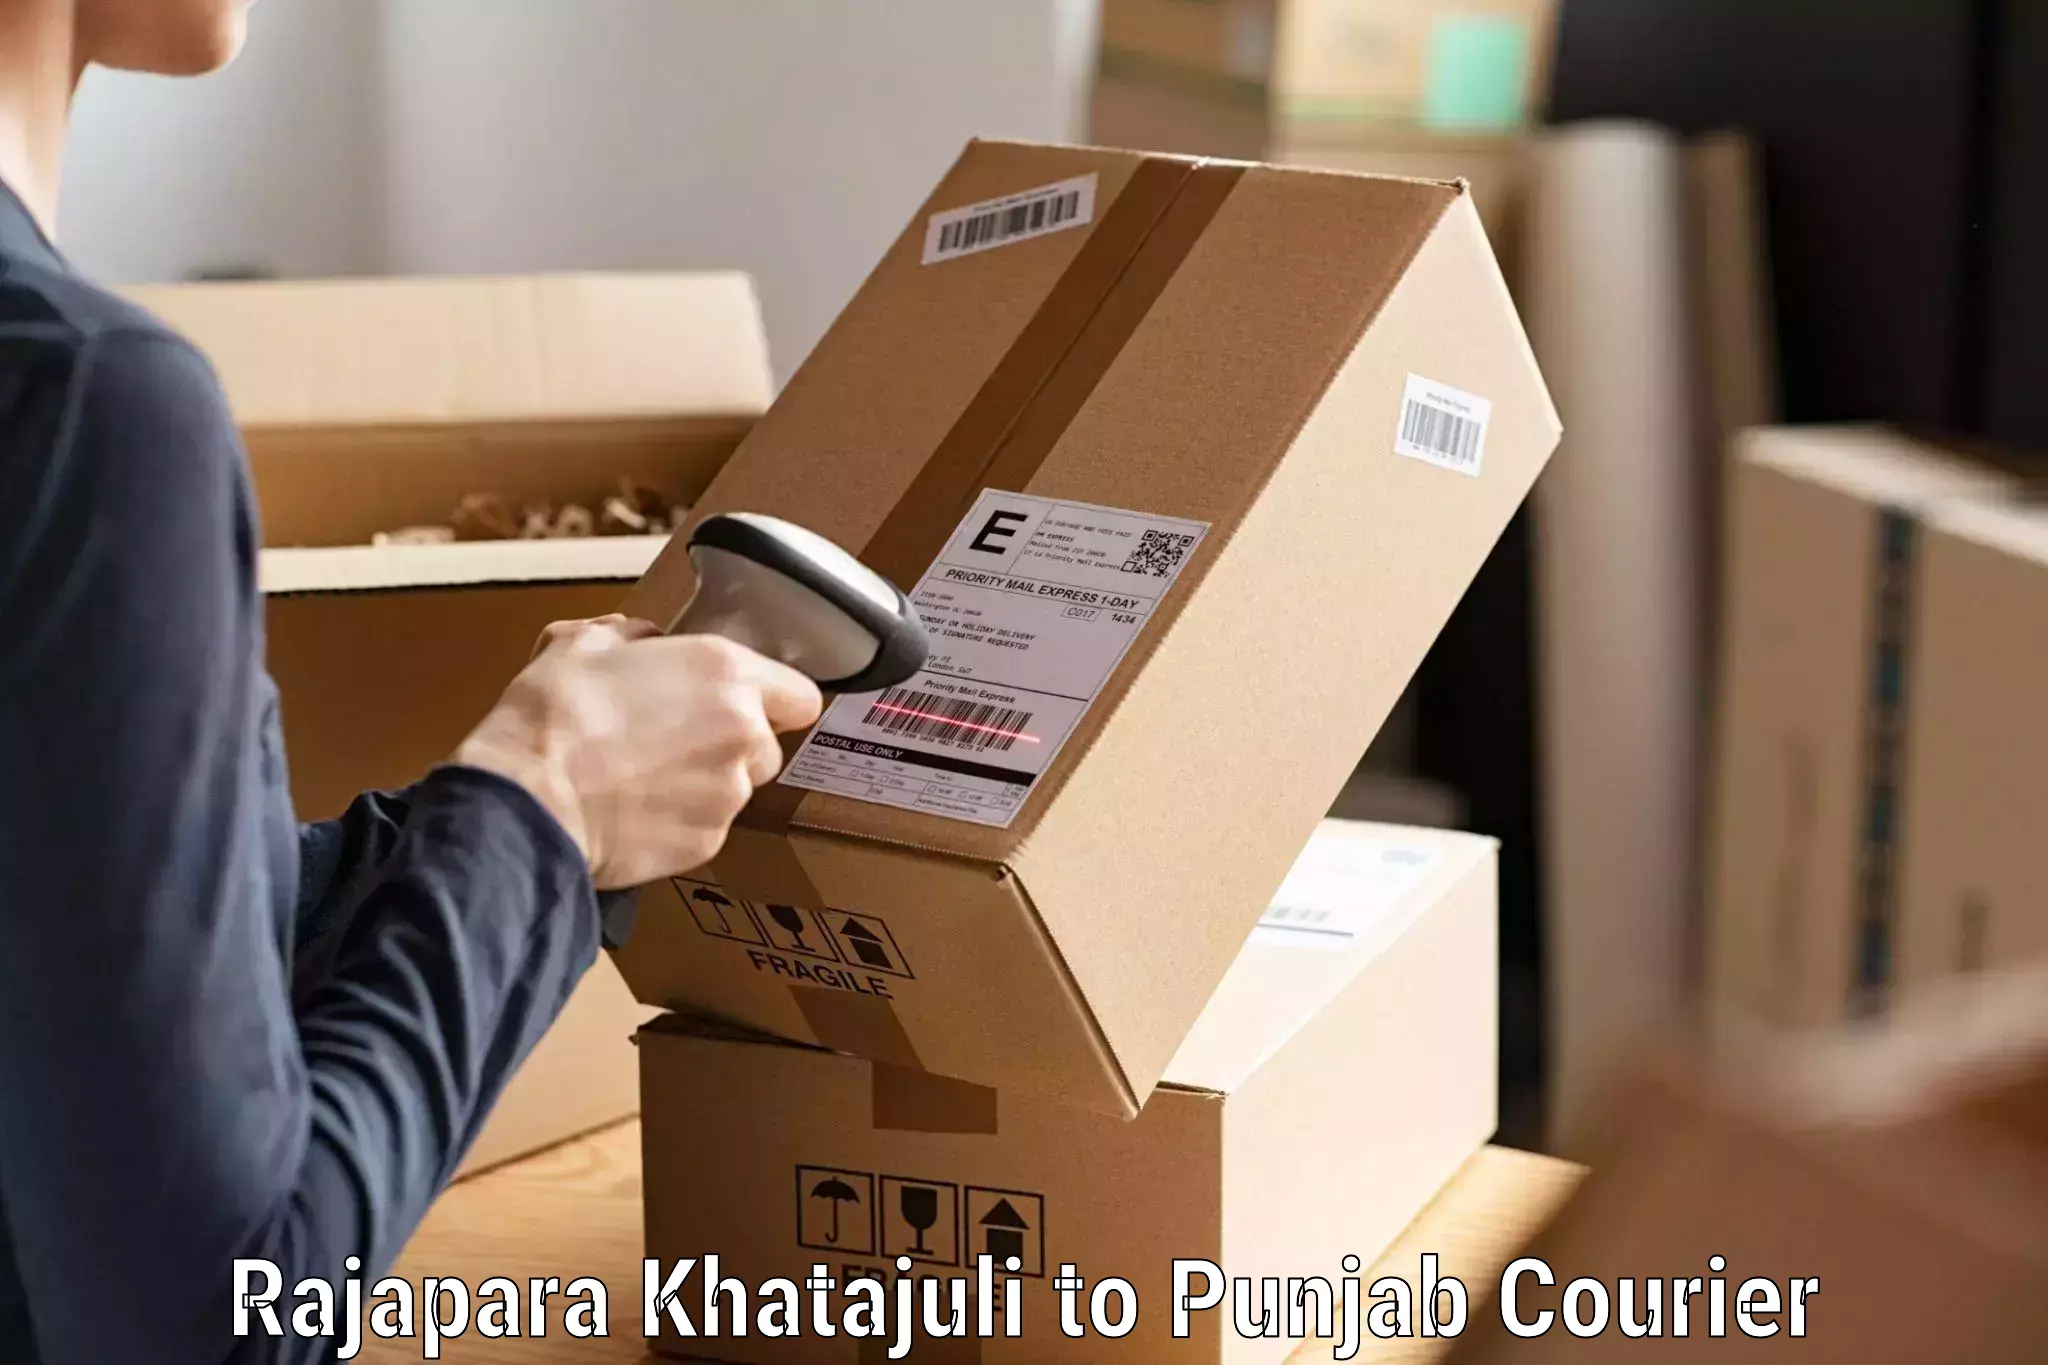 Next day courier Rajapara Khatajuli to Punjab